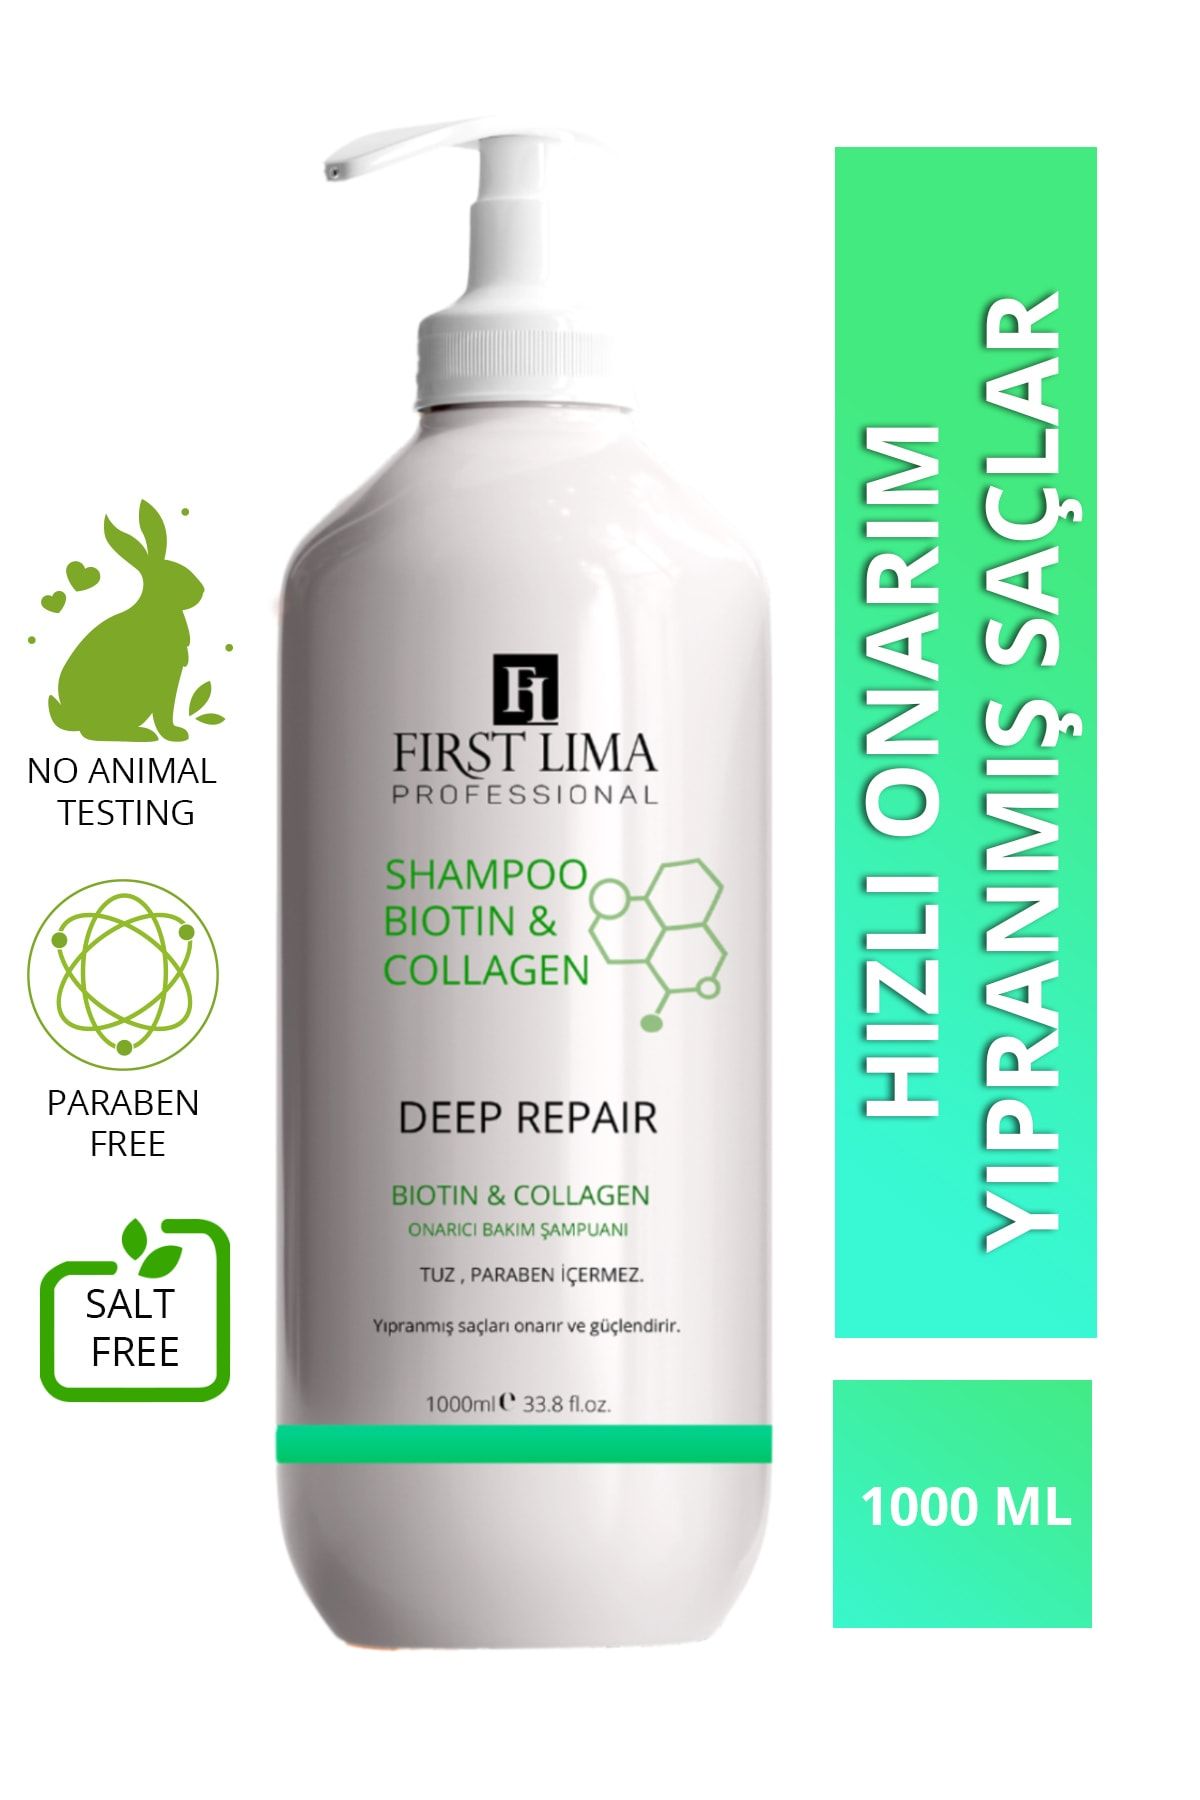 First Lima Professional Yıpranmış Saçlar Için Tuzsuz Onarıcı Biotin & Collagen Şampuanı 1000 Ml